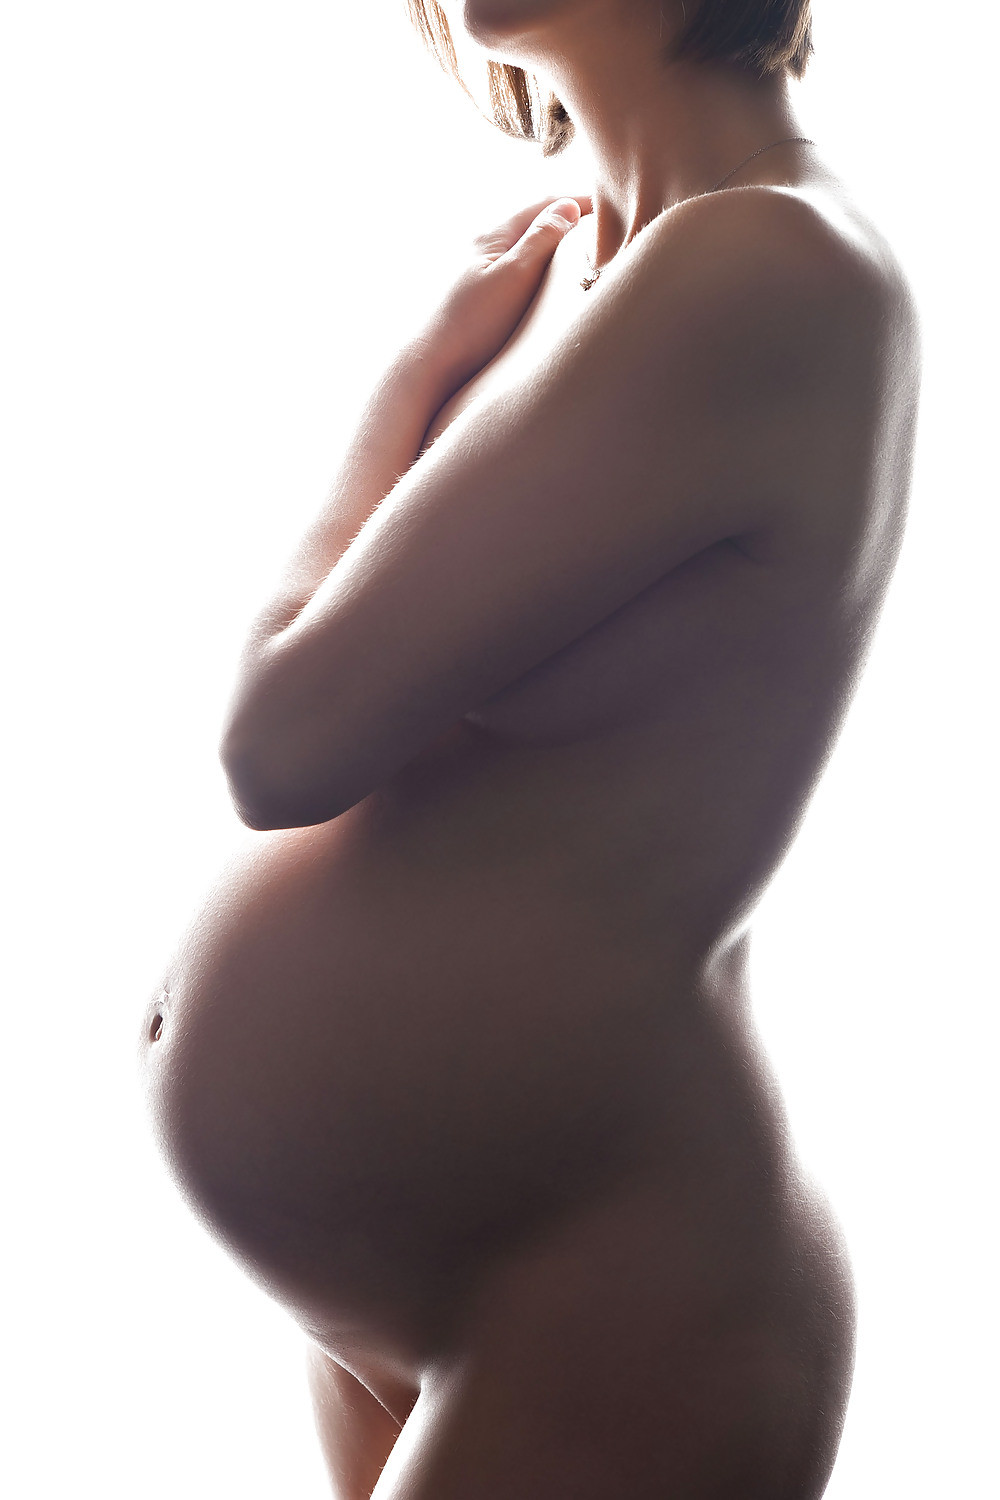 Fotos de esposas embarazadas desnudas
 #67712626